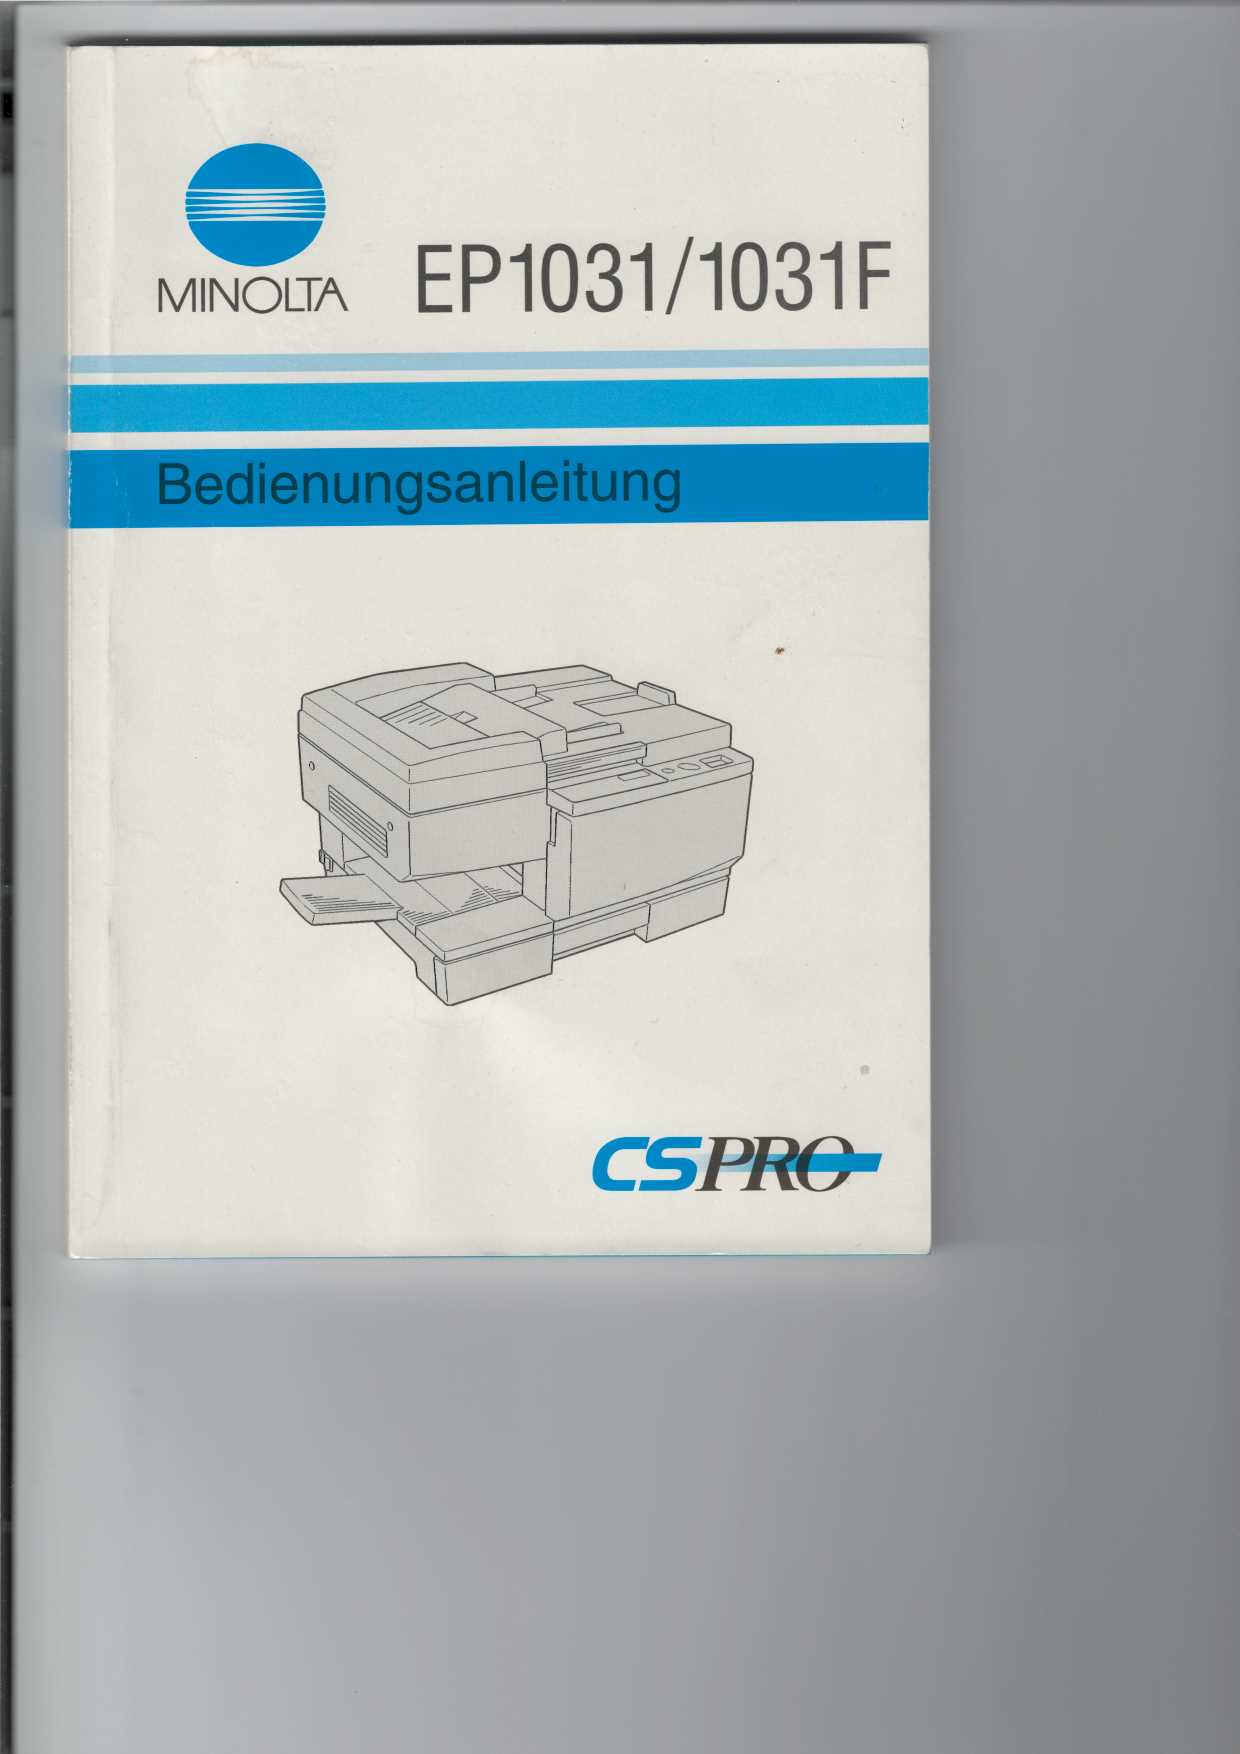   Bedienungsanleitung fr Kopierer EP 1031 / 1031 F Minolta. 